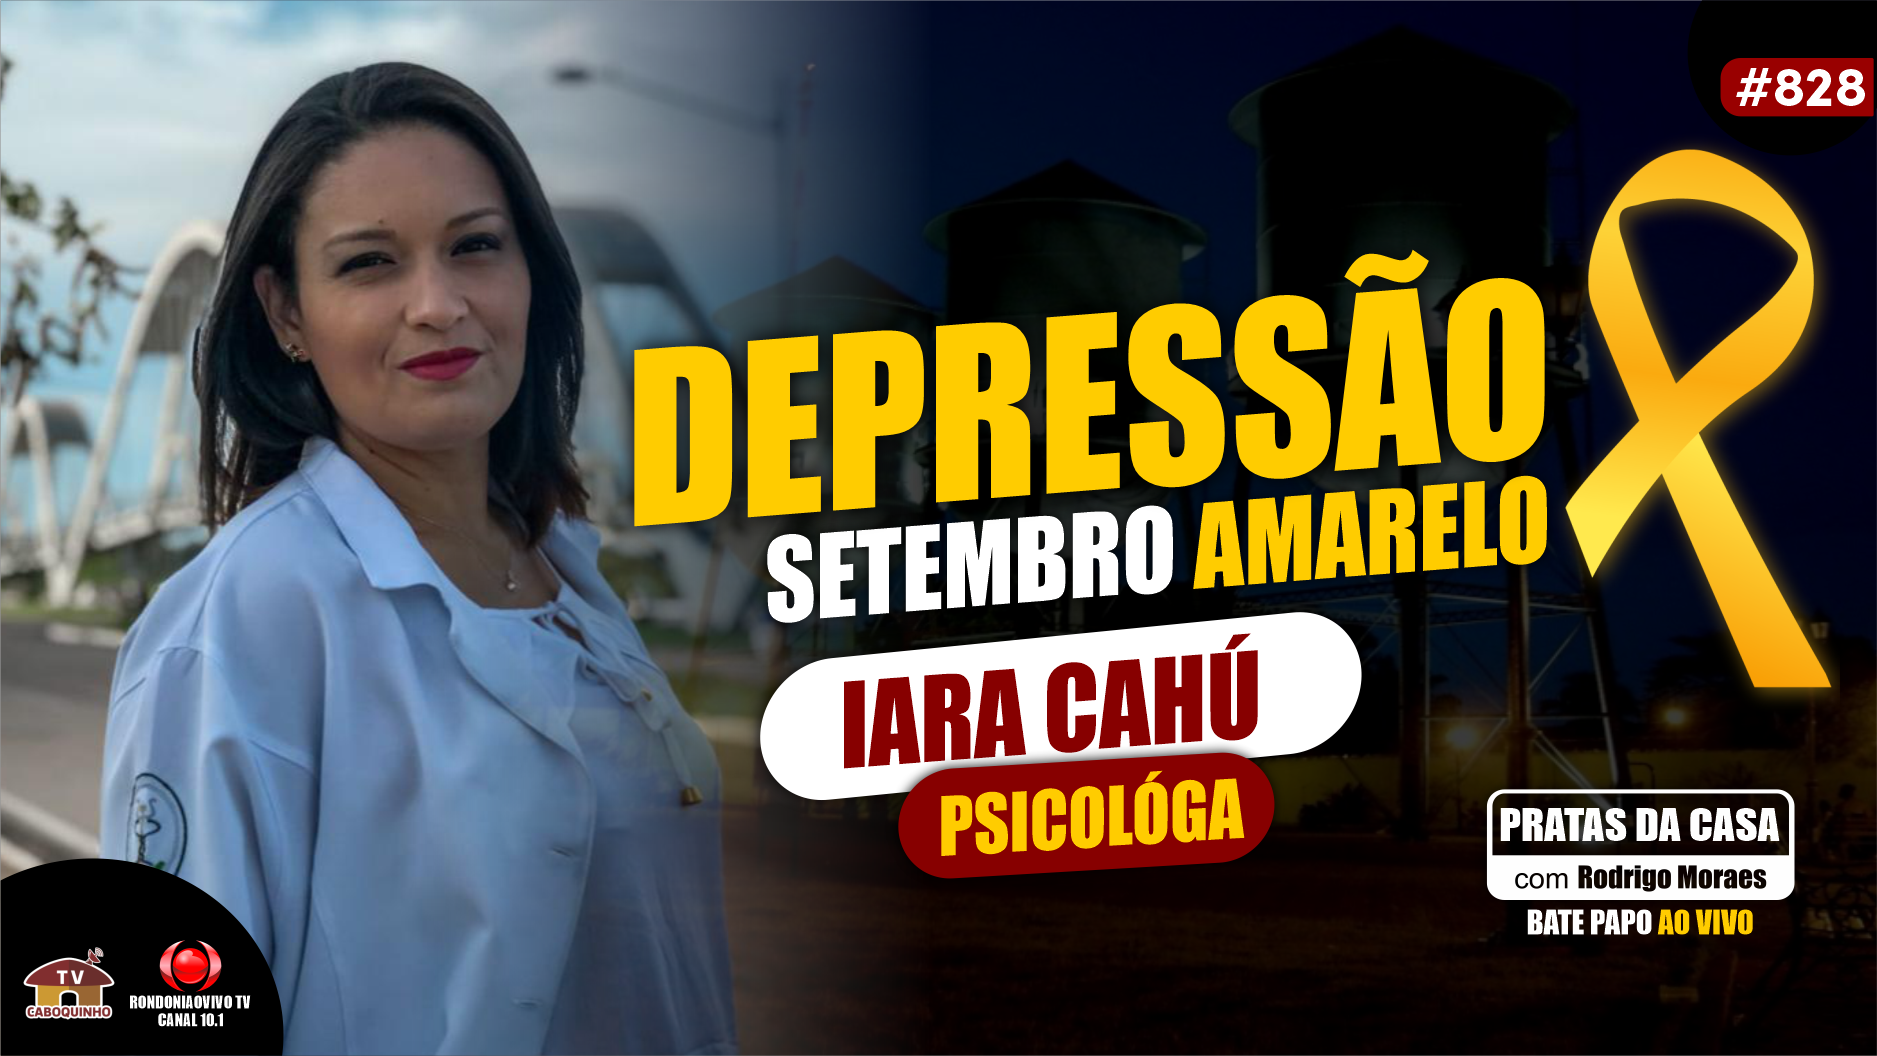 IARA CAHÚ DEPRESSÃO E SETEMBRO AMARELO - #PRATASDACASA #828